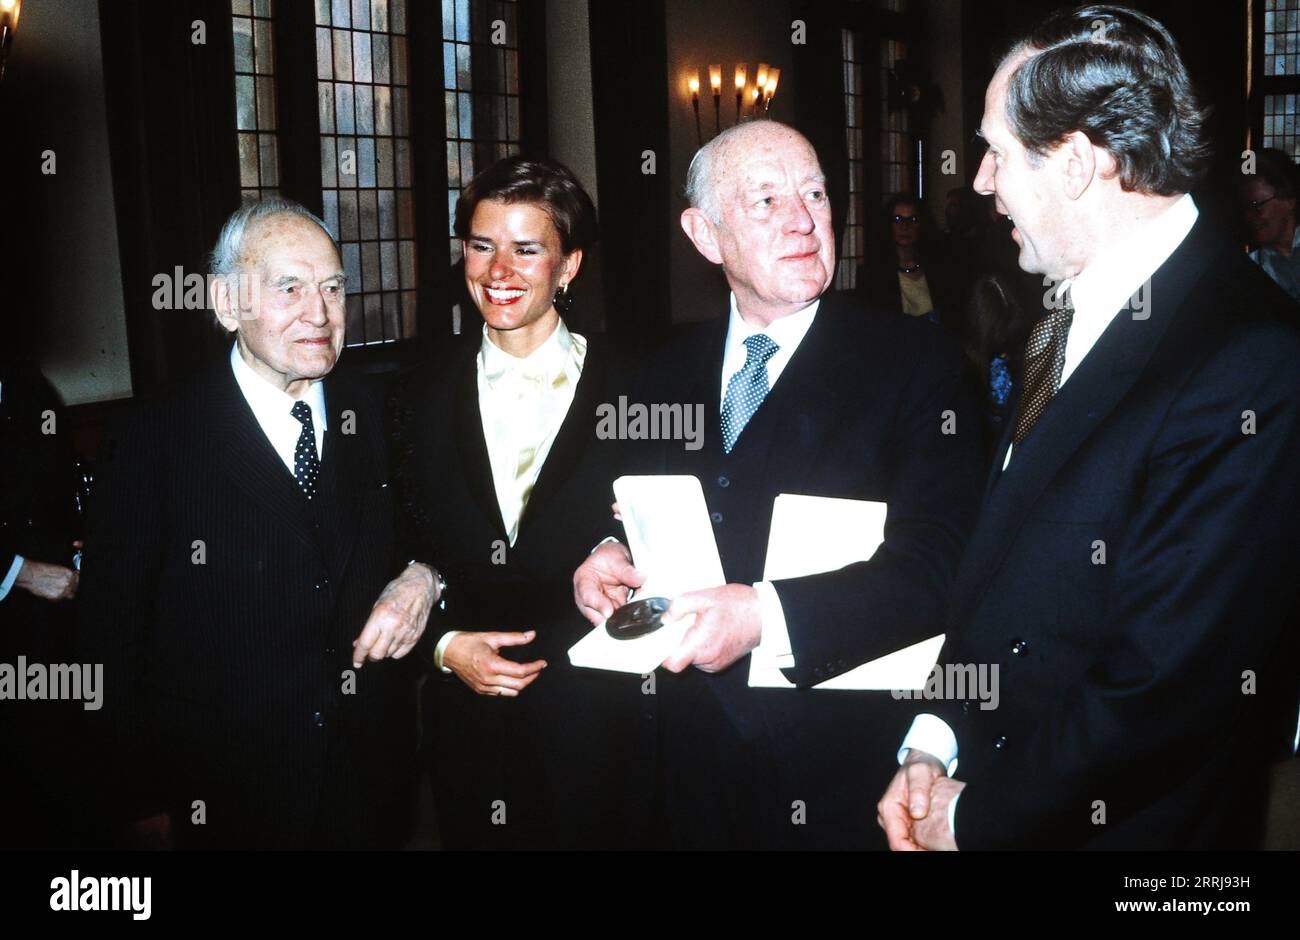 Alfred Carl Toepfer, Birthe Toepfer, Sir Alec Guinness und Klaus von Dohnanyi in Hamburg, Deutschland um 1988. Stock Photo